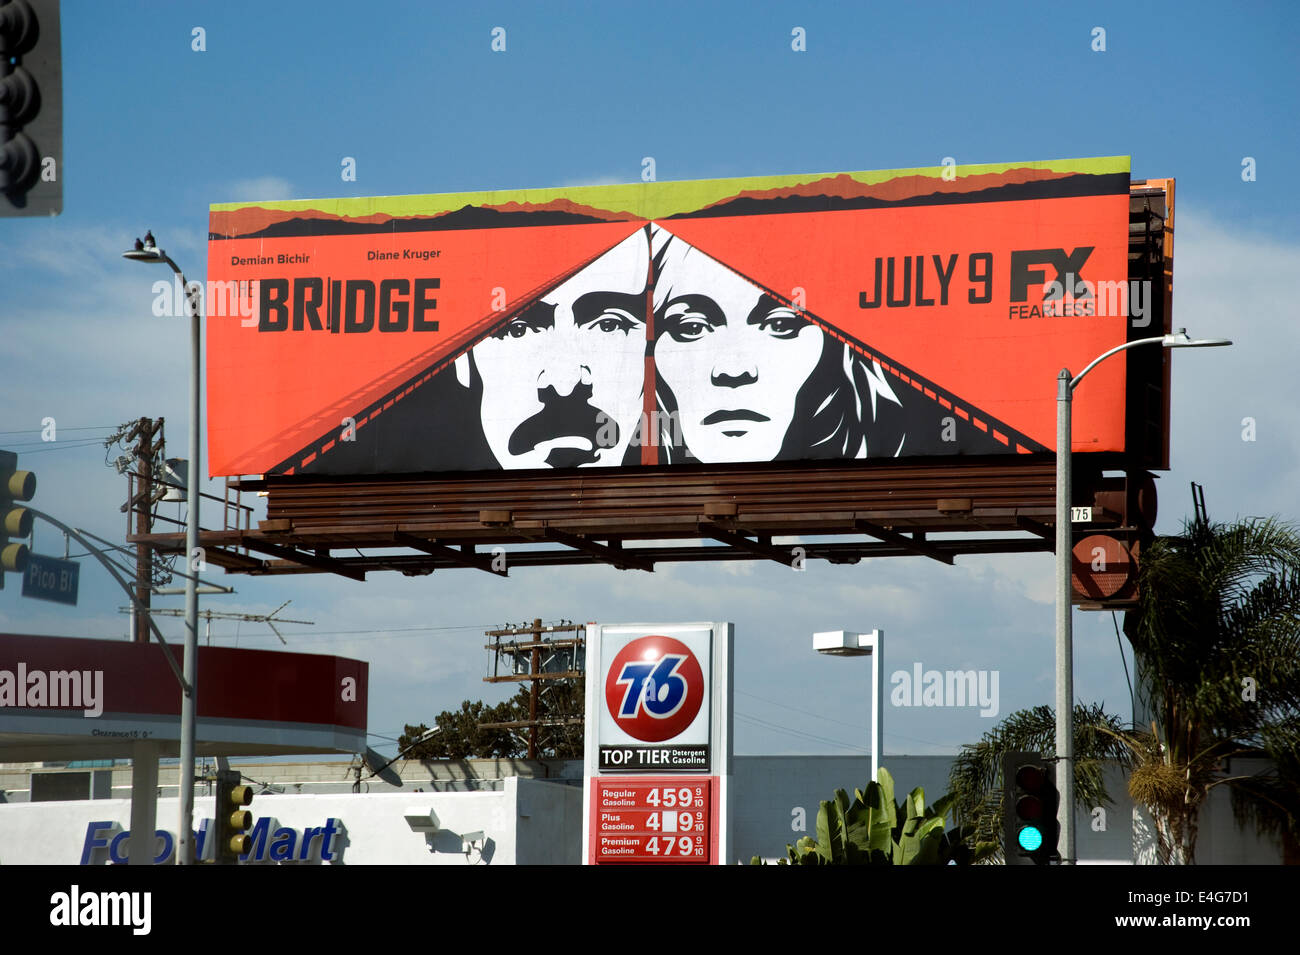 Reklametafel für FX-Fernsehserie The Bridge Stockfoto